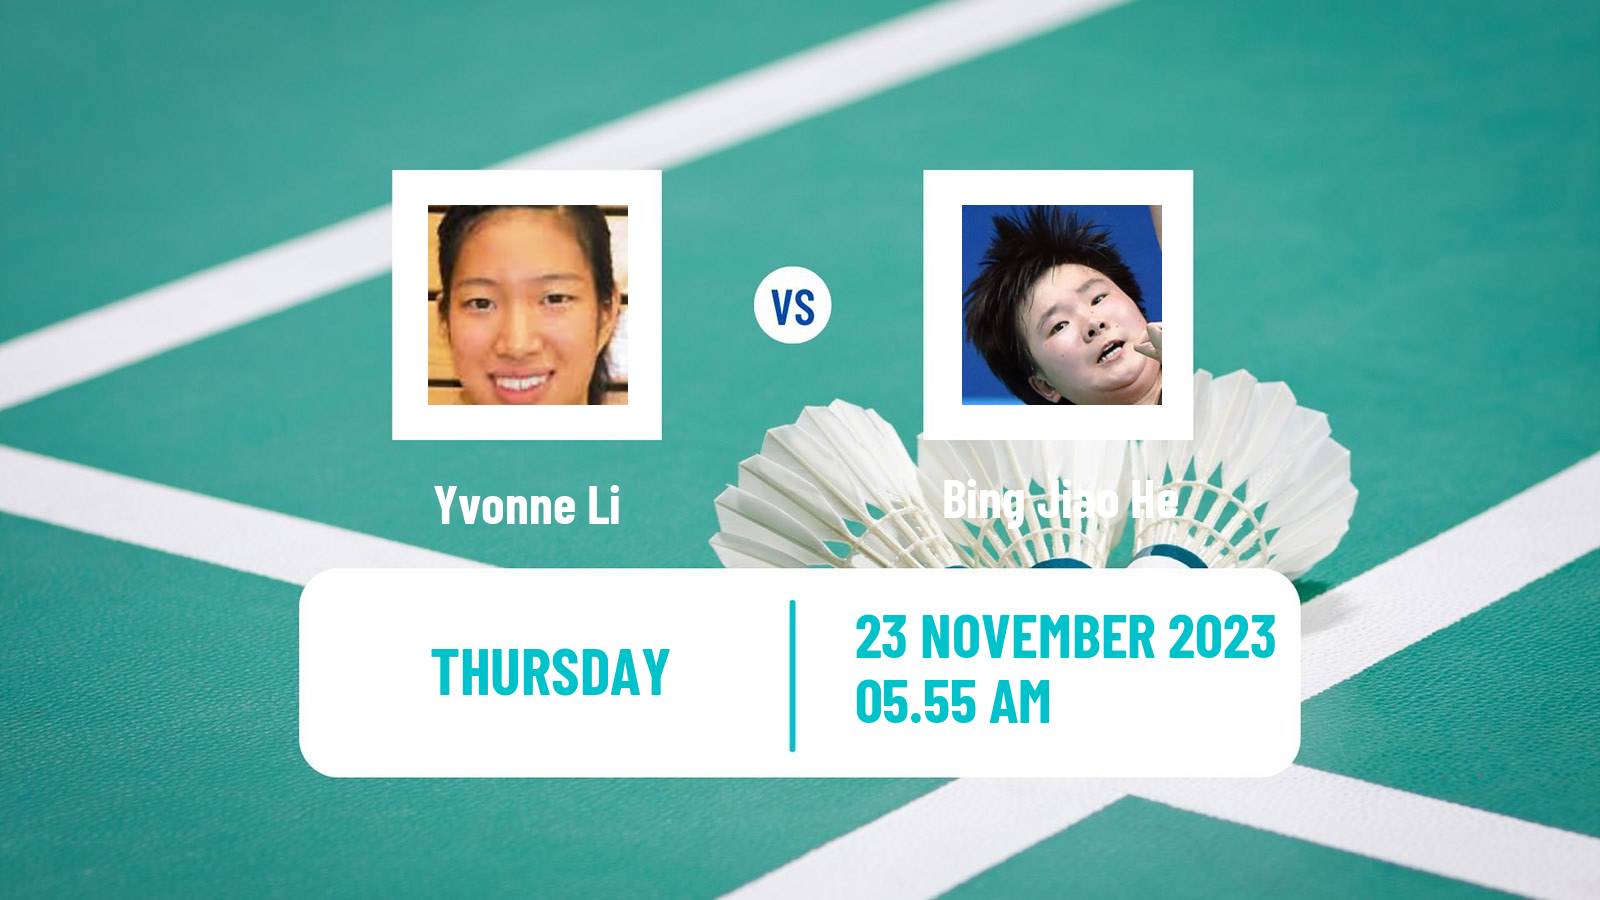 Badminton BWF World Tour China Masters 2 Women Yvonne Li - Bing Jiao He